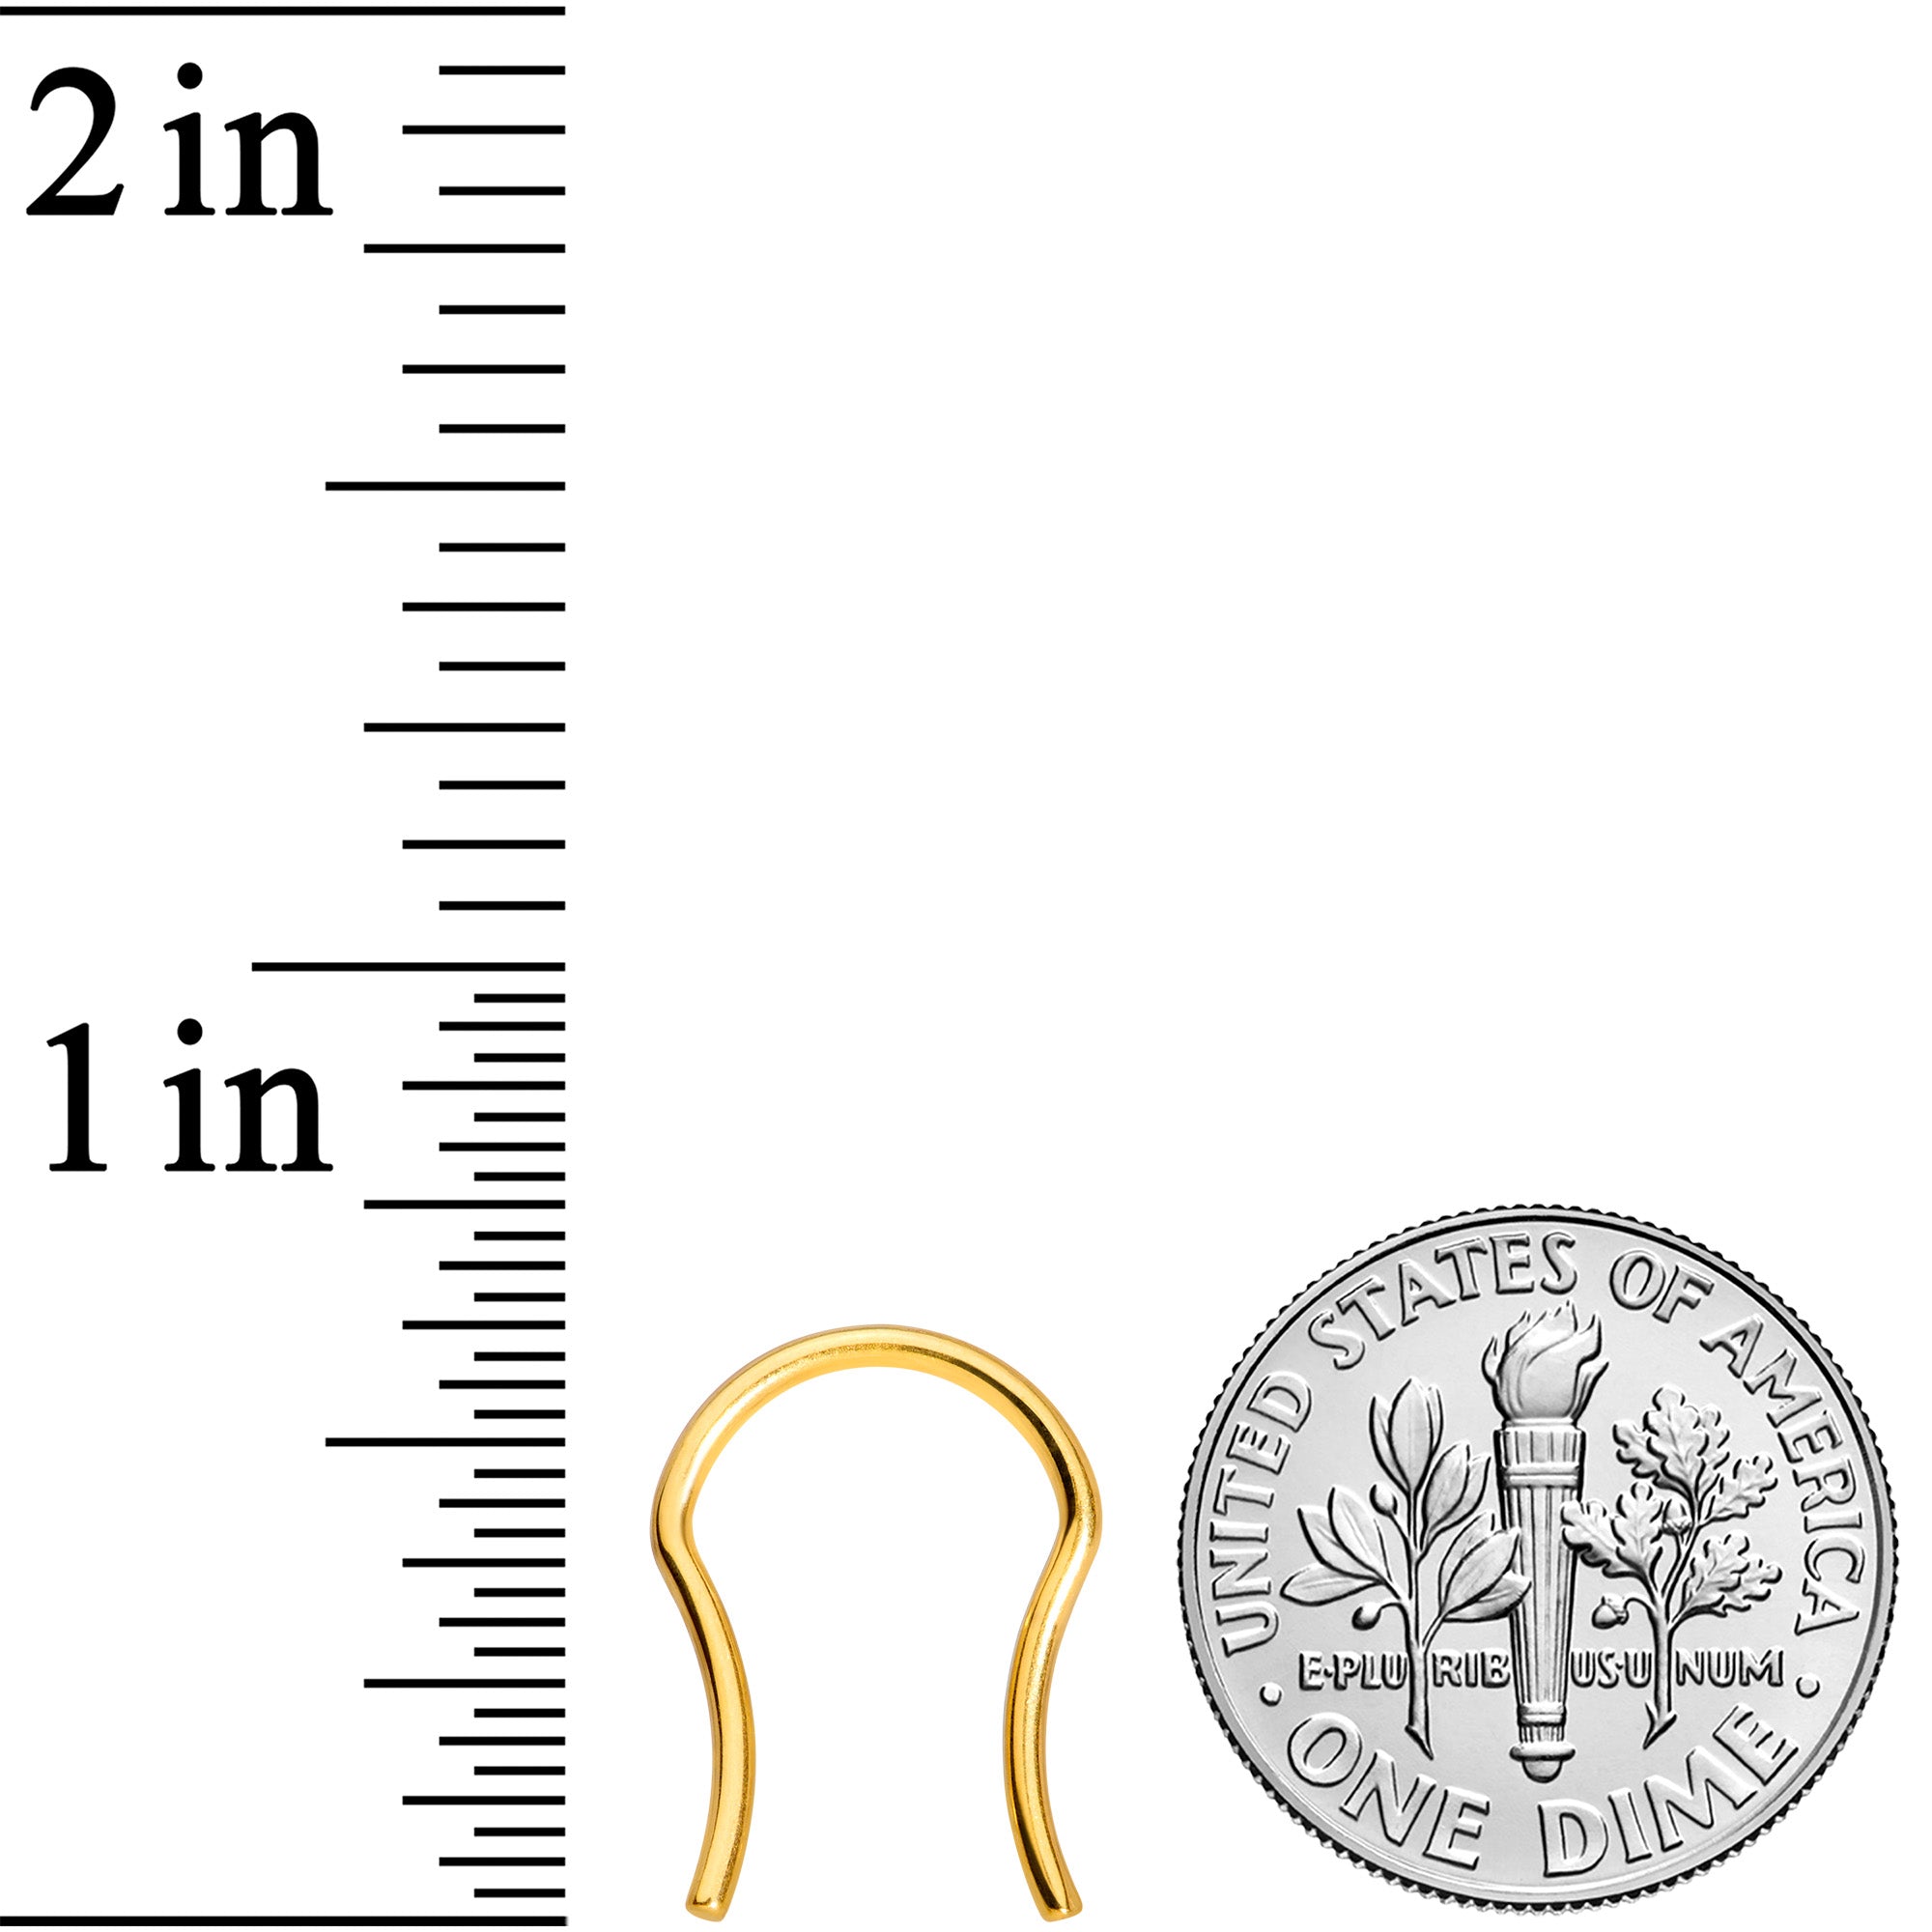 16 Gauge 5/8 Gold Tone ASTM F-136 Implant Grade Titanium Septum Retainer